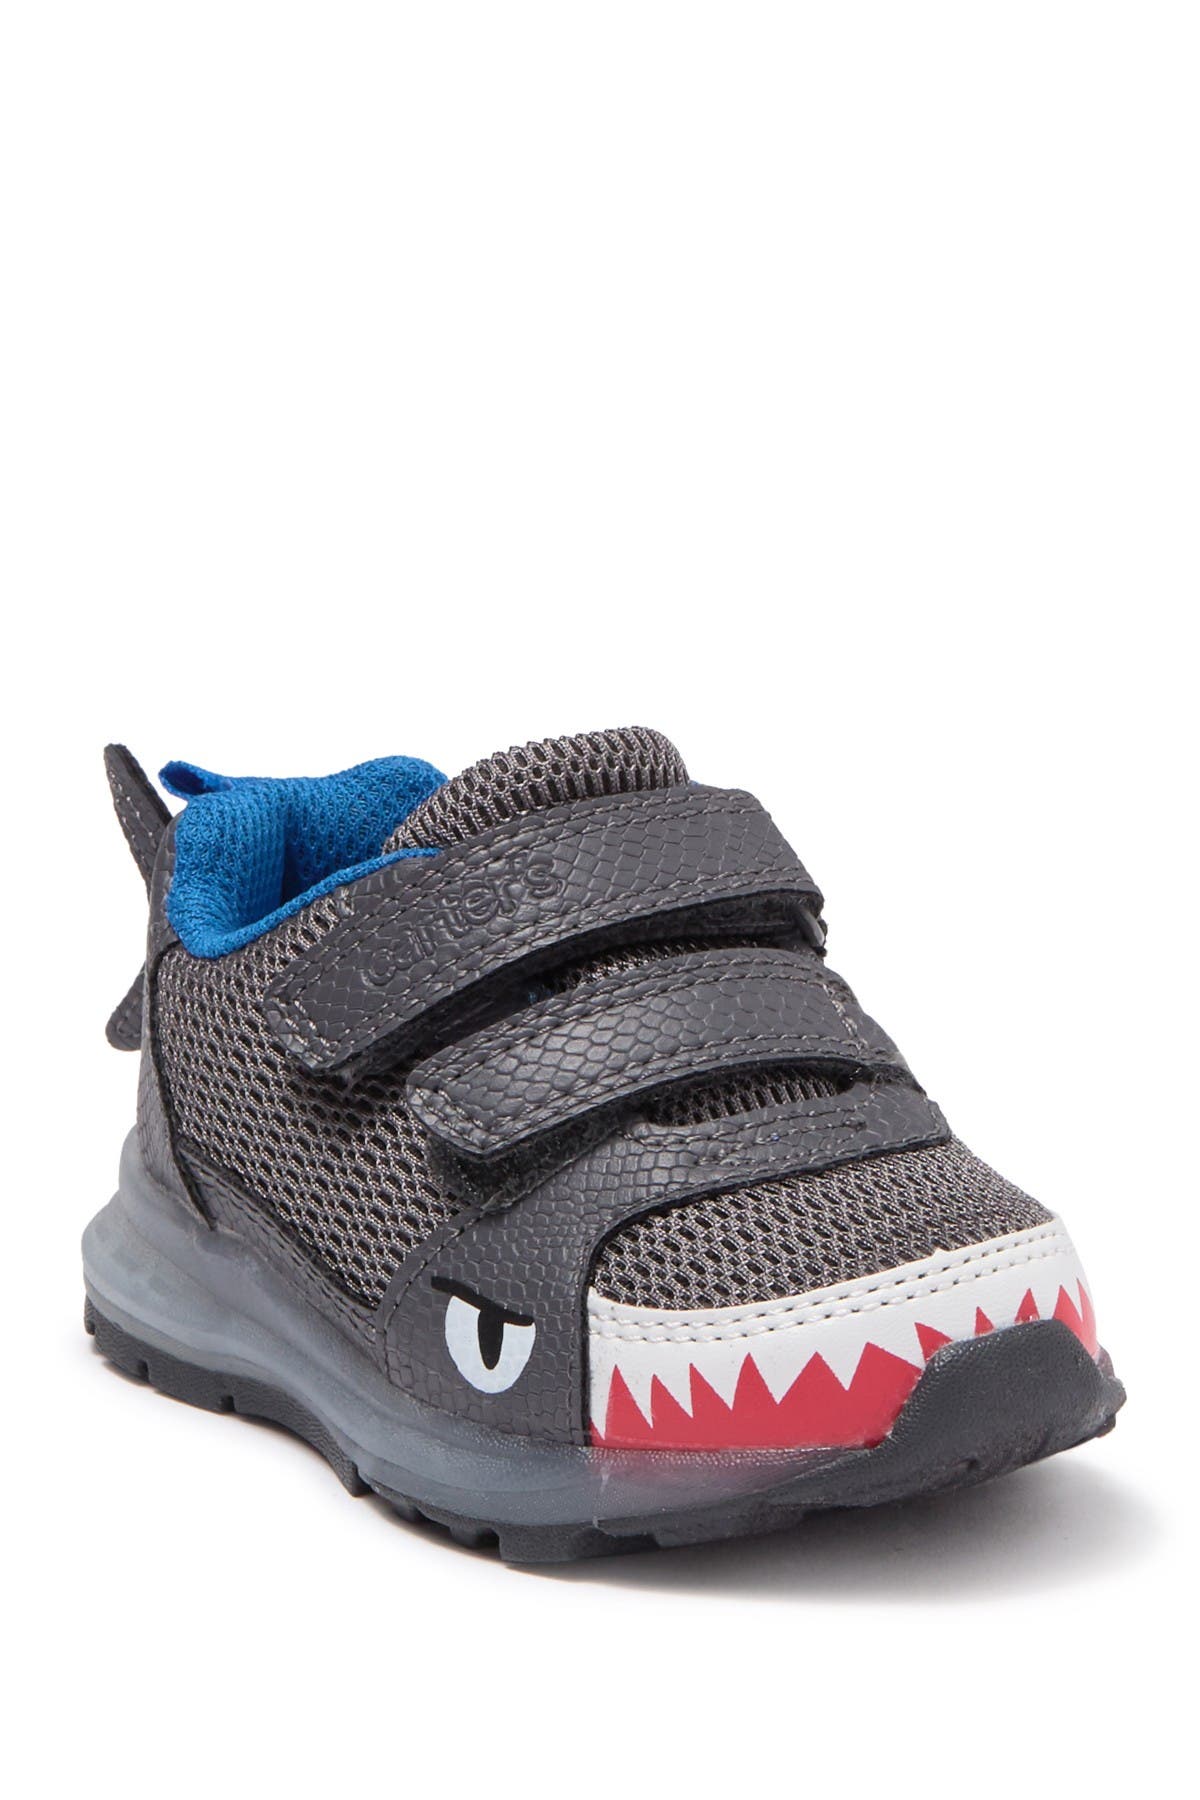 Carter's | Fun Shark Light-Up Sneaker 